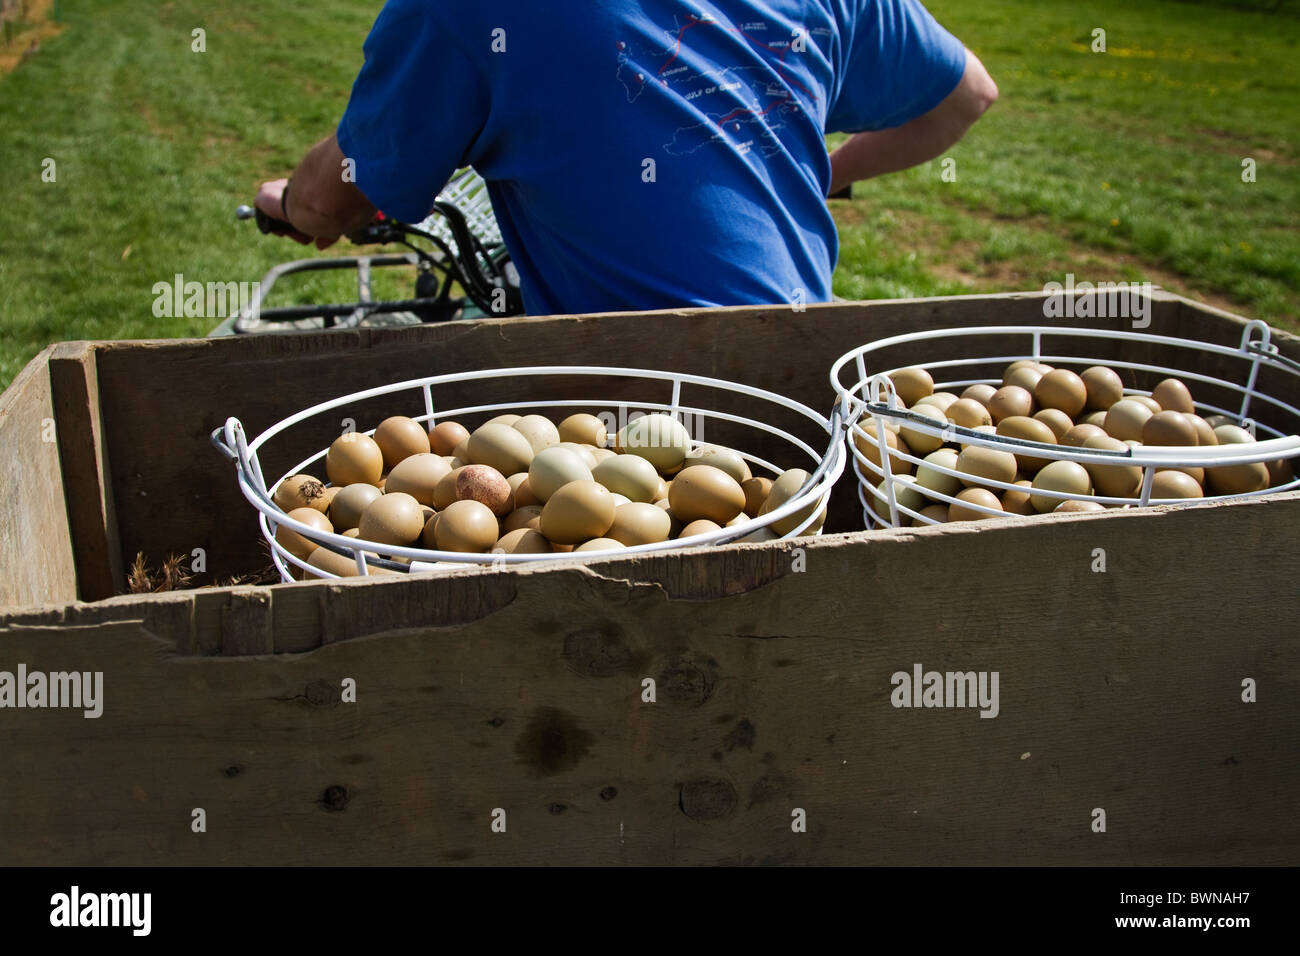 Wildhüter ausziehen Fasane Eiern in den Inkubator auf dem Quad-bike Stockfoto